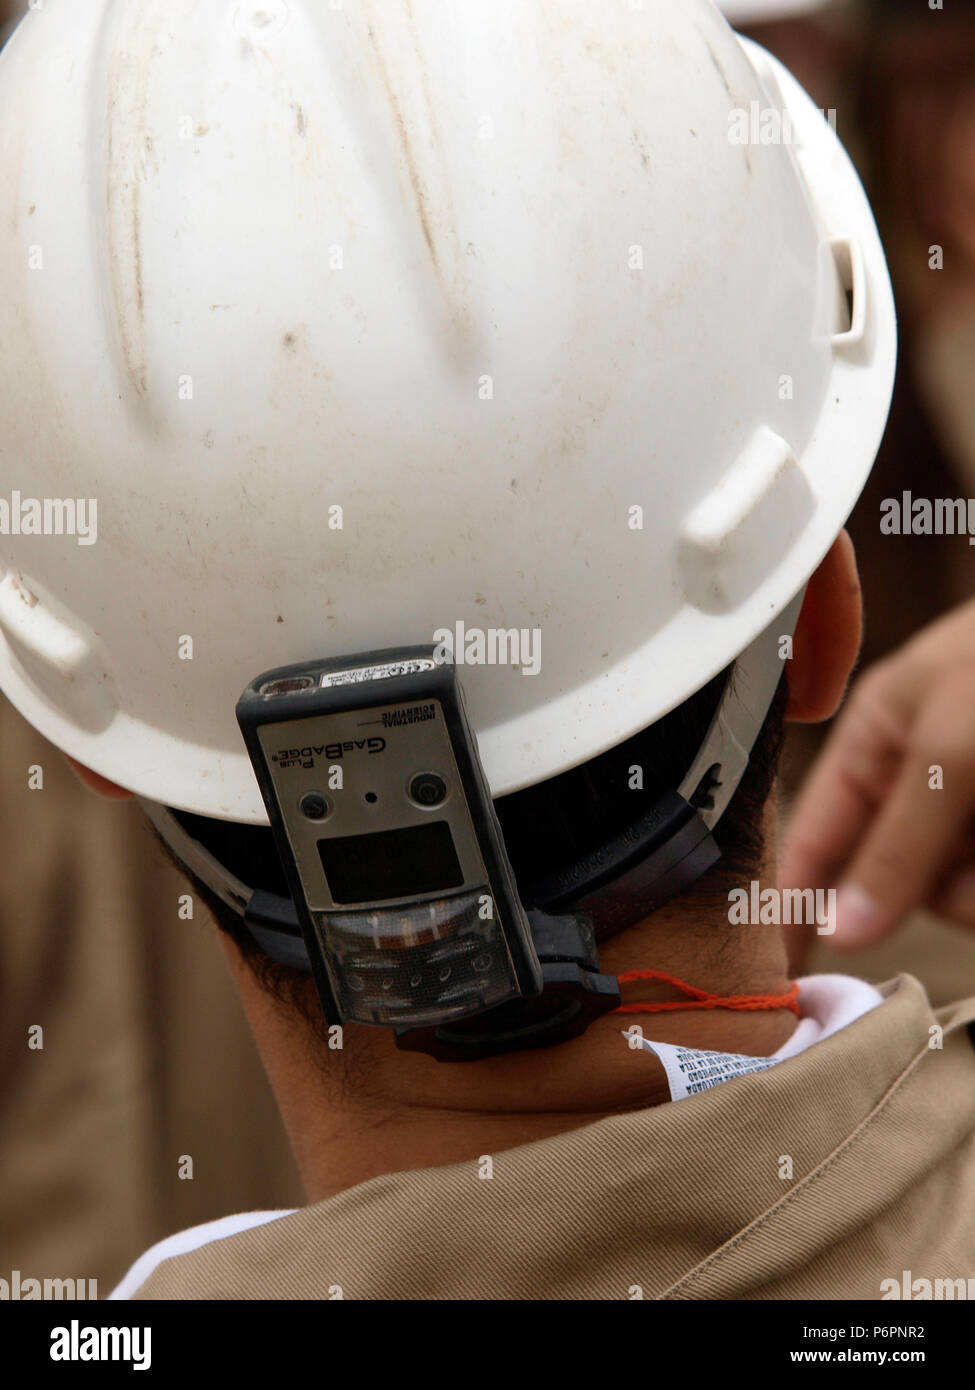 Les travailleurs du pétrole fixer un détecteur de gaz, de leur casque d'être alerte et sûr pour le travail autour des puits. Banque D'Images